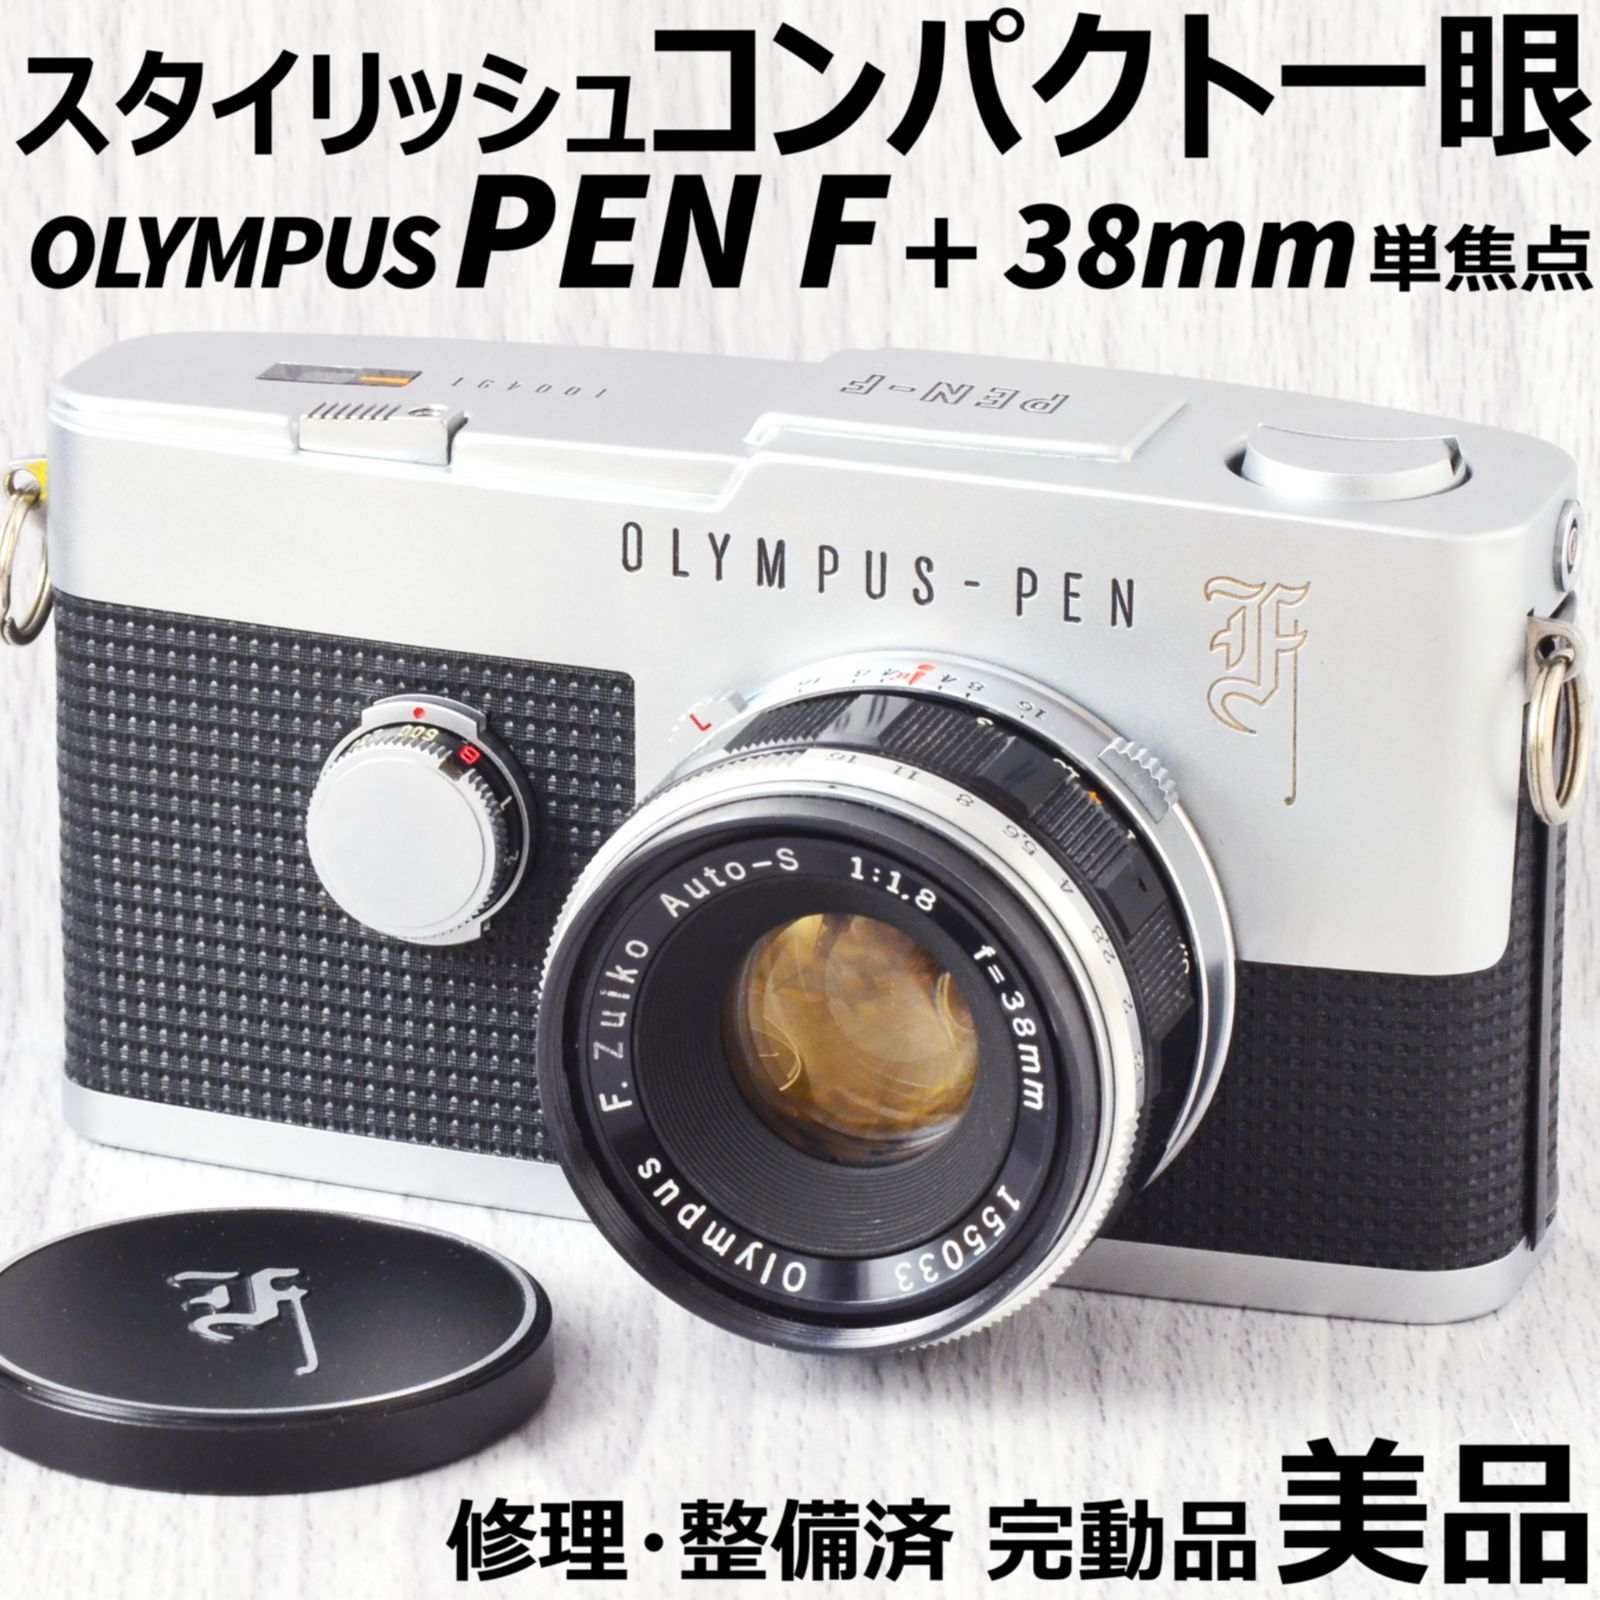 美品! OLYMPUS PEN F + 38mm f1.8 単焦点レンズ 整備済 - スタジオ・わ